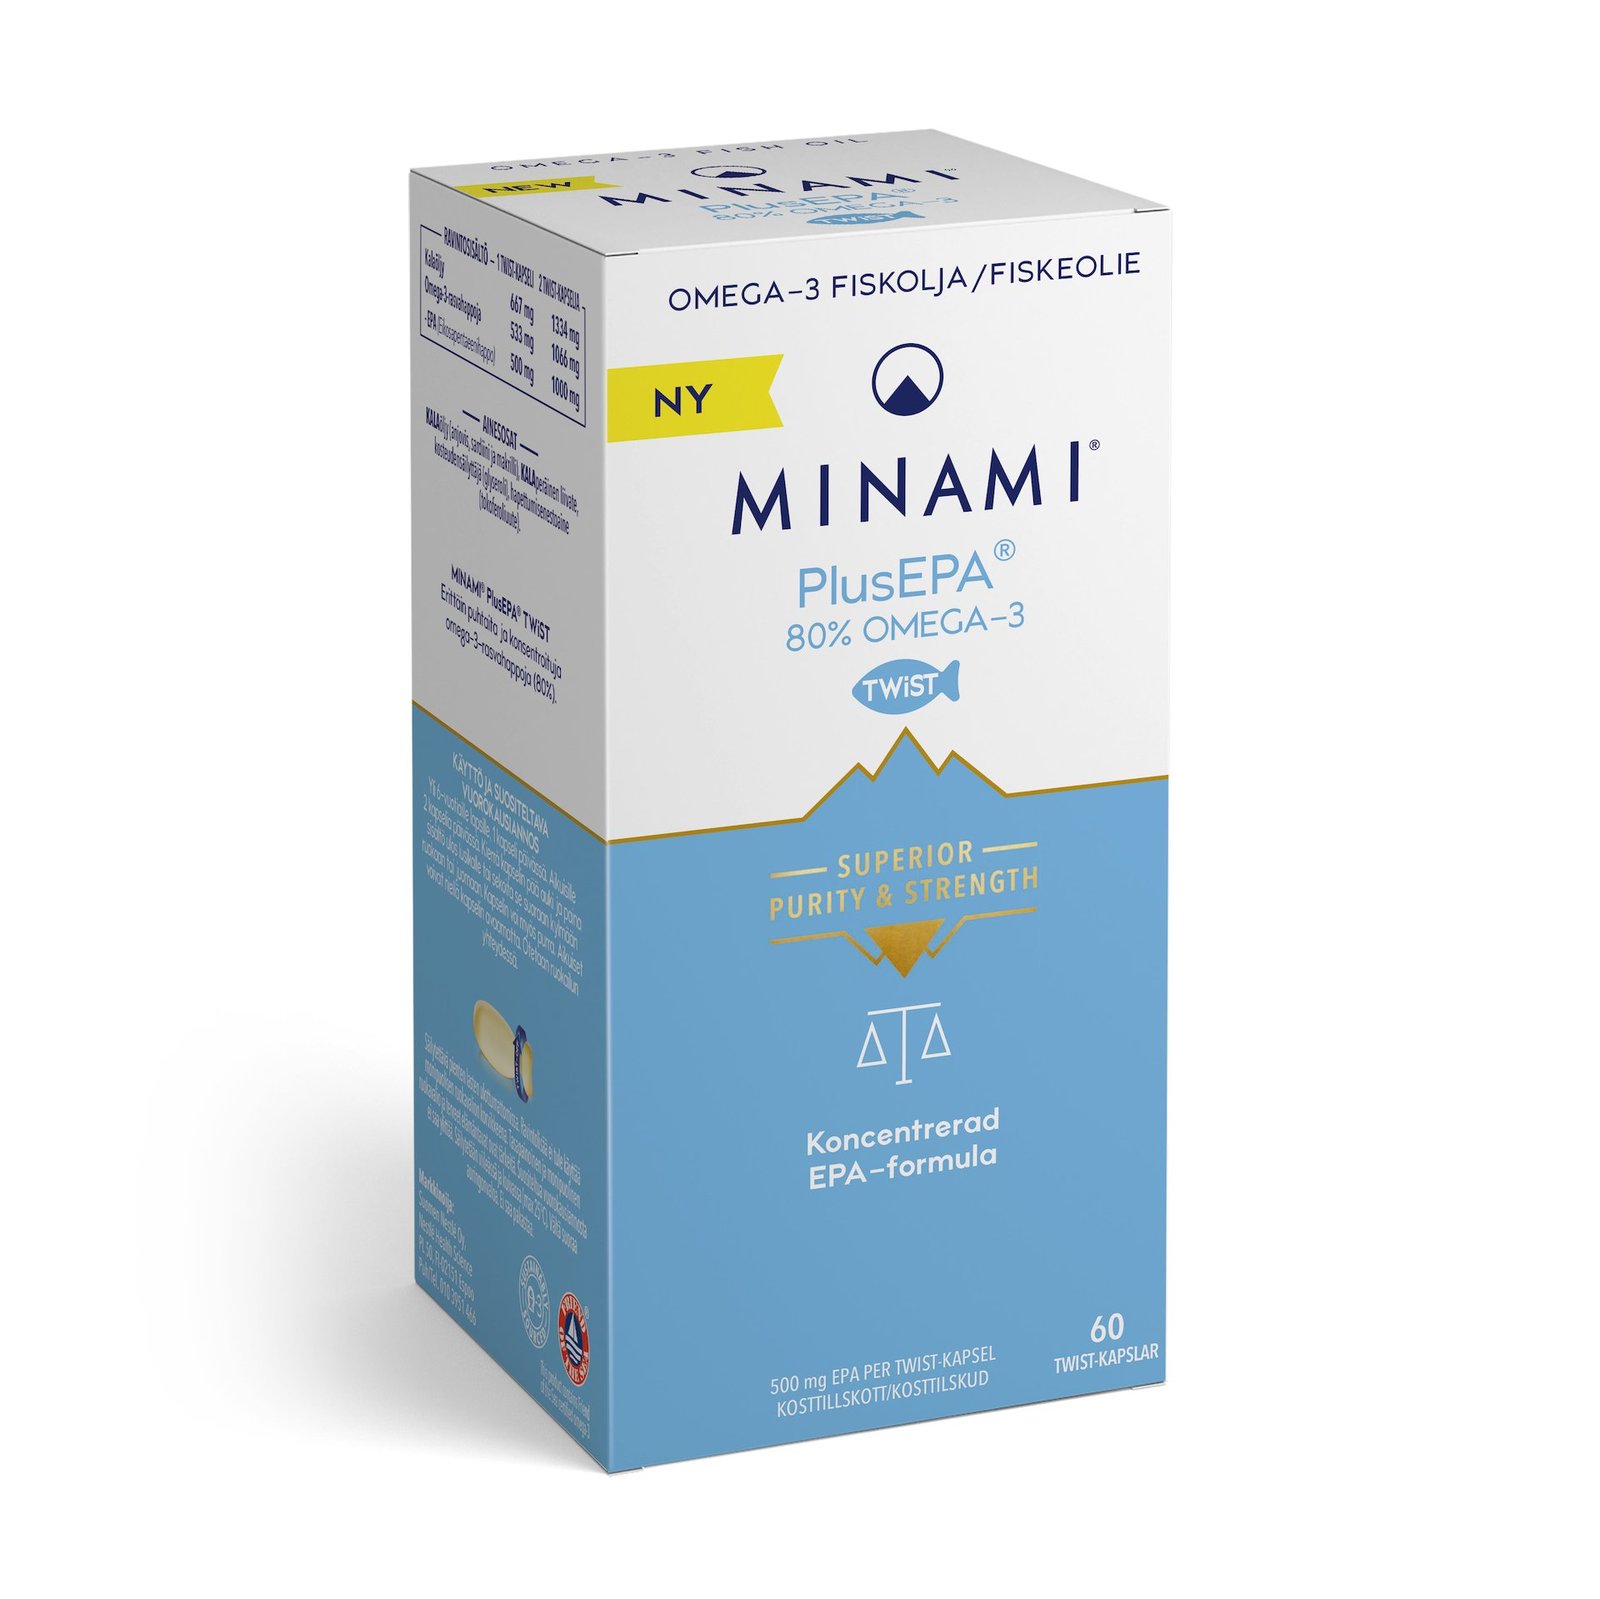 MINAMI PlusEPA Omega-3 80% 60 kapslar